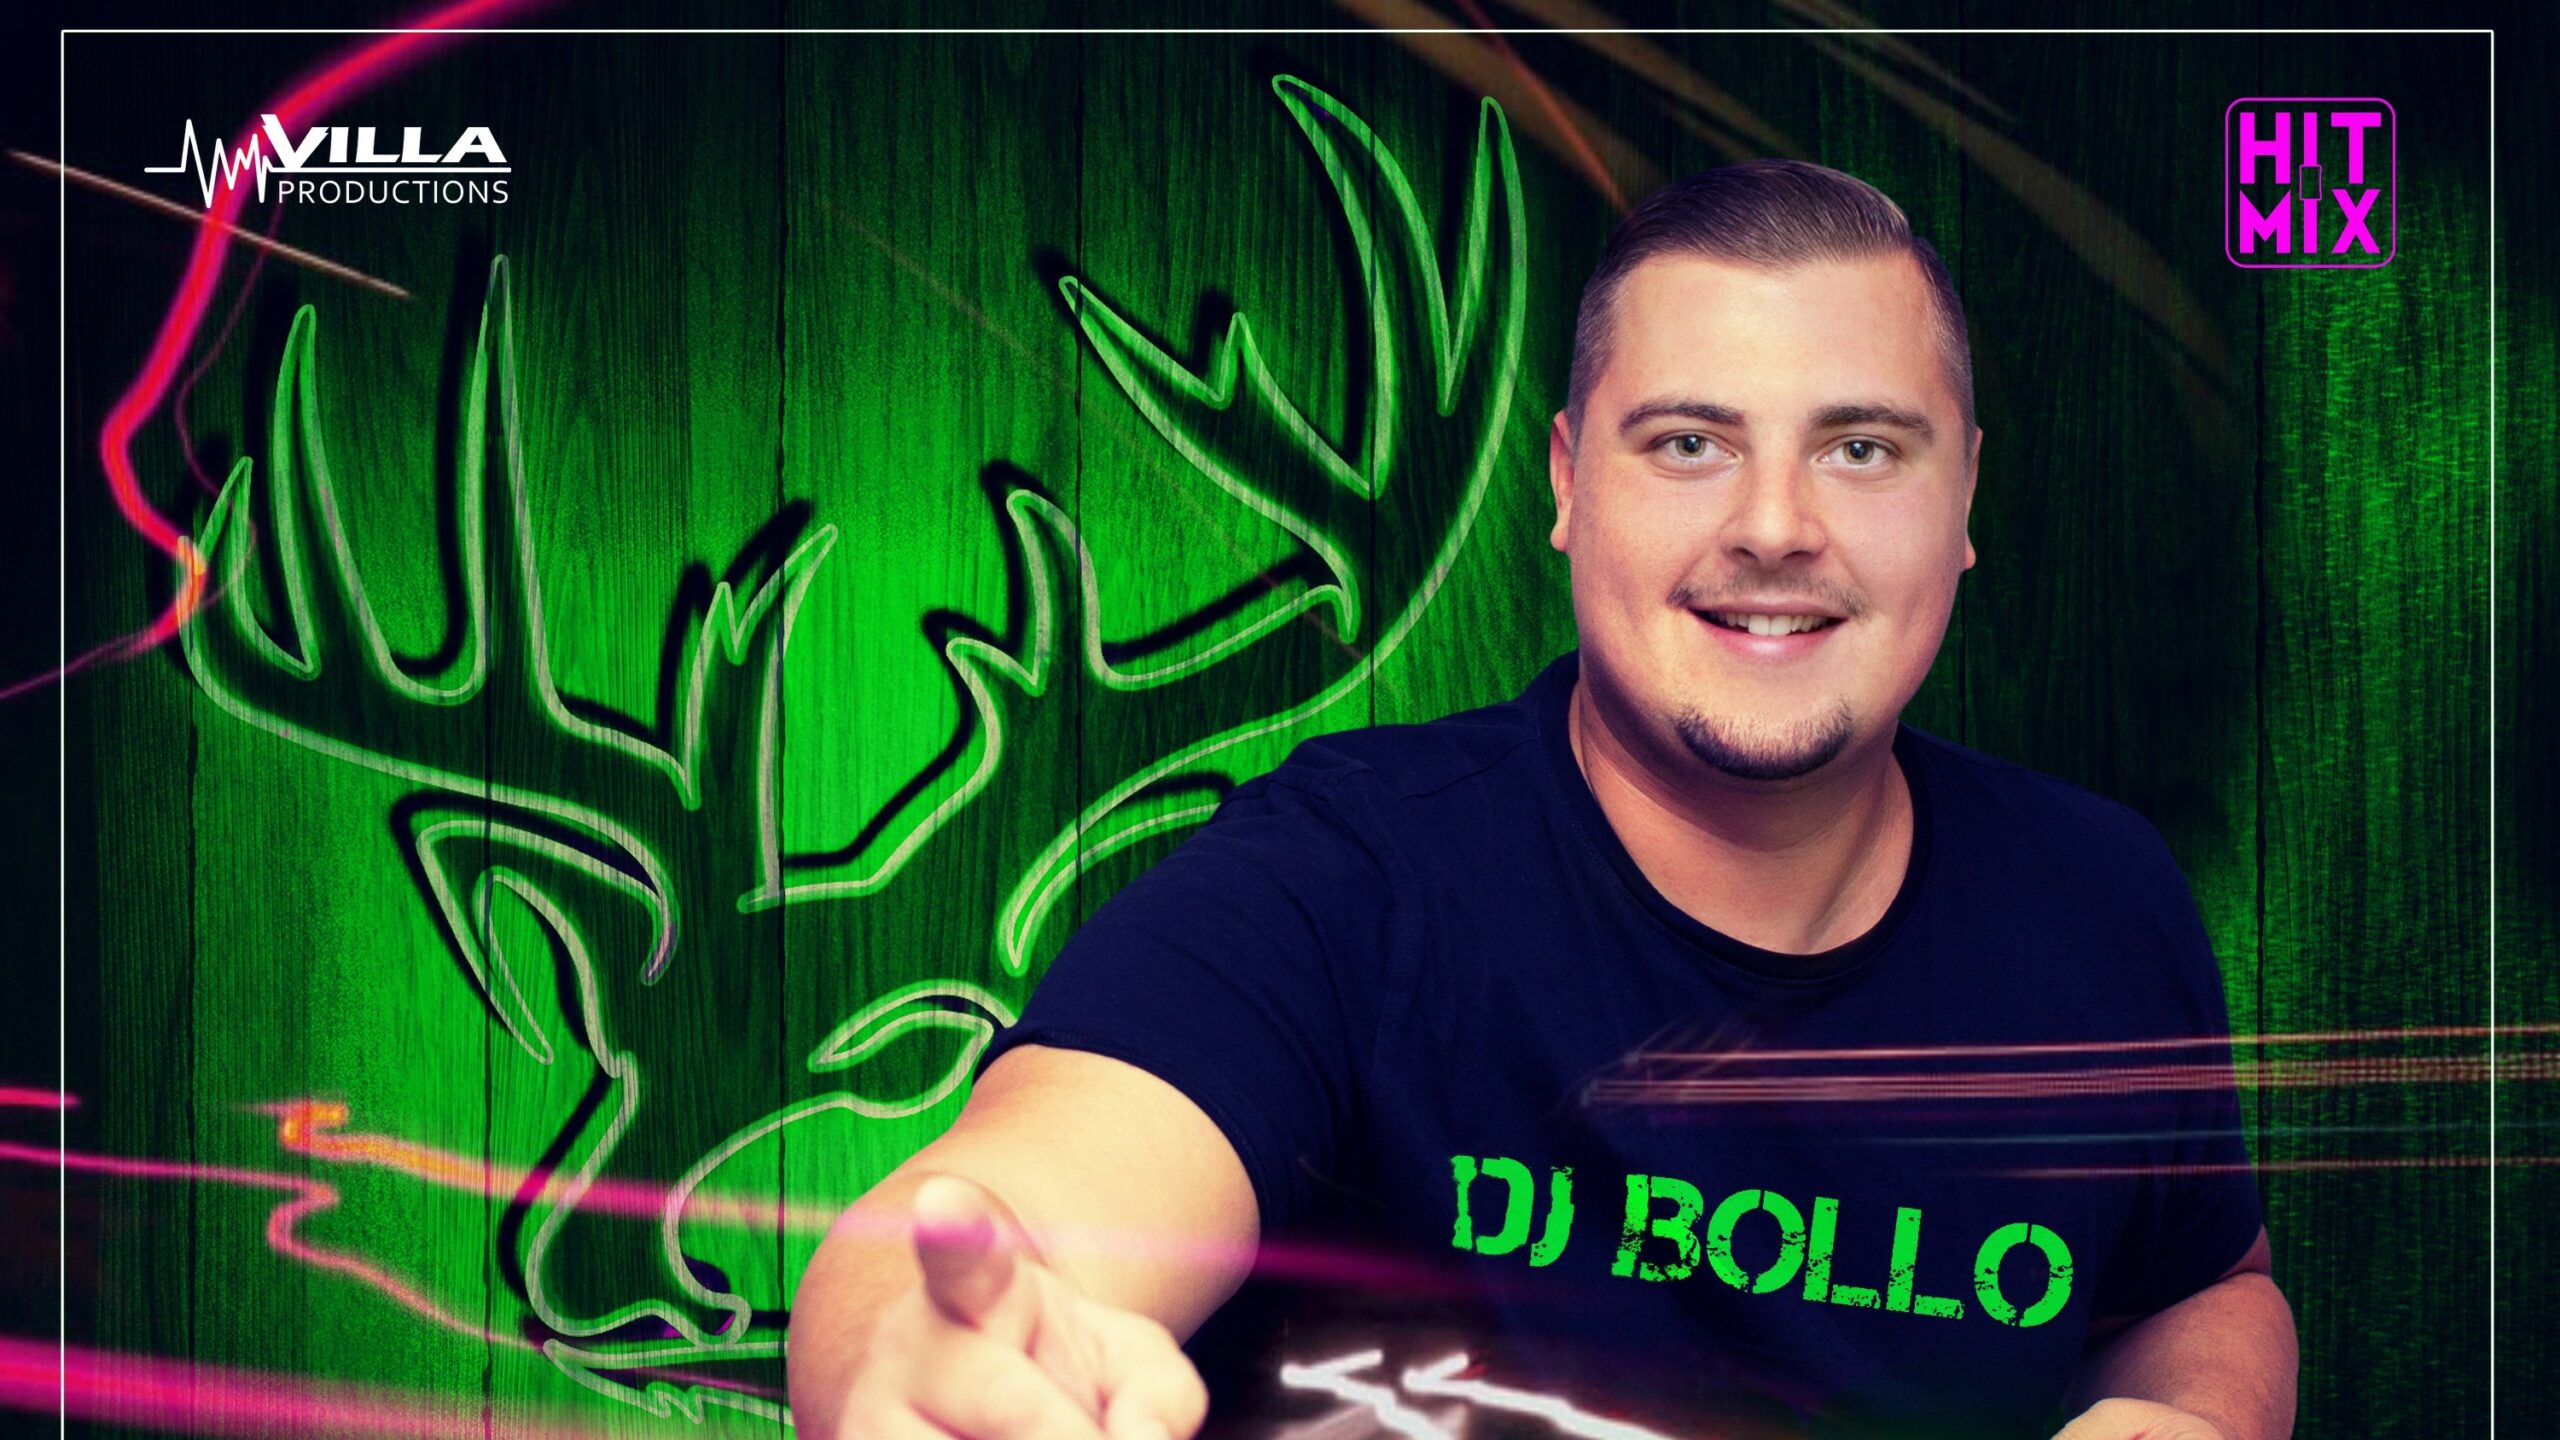 DJ Bollo feiert neue Single „Ich hab den Hirsch gesehen“